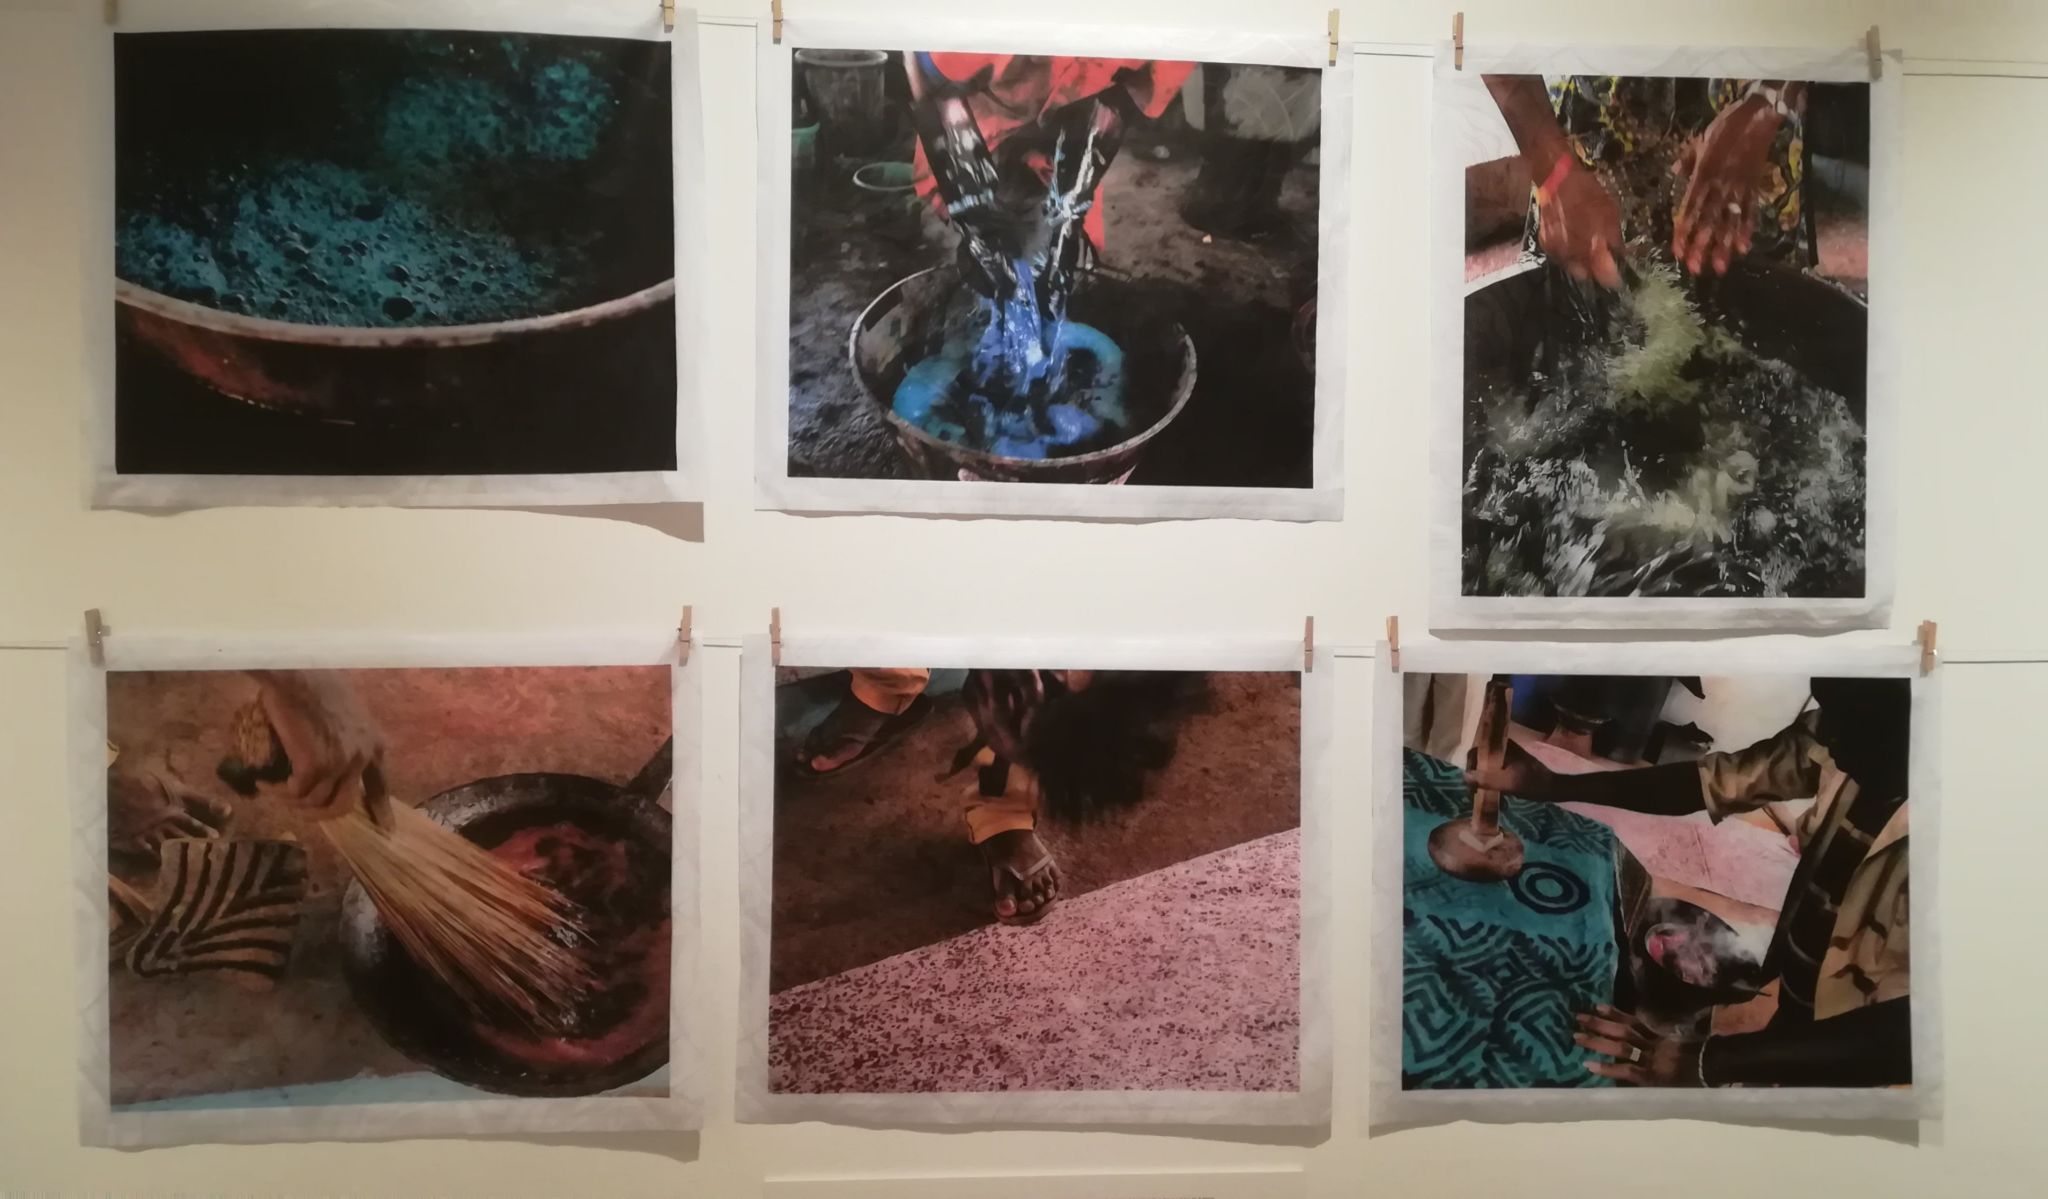 Fotografías de Kim Manresa expuestas en "El lenguaje de las telas”sobre el proceso de elaboración del batik de Mali.